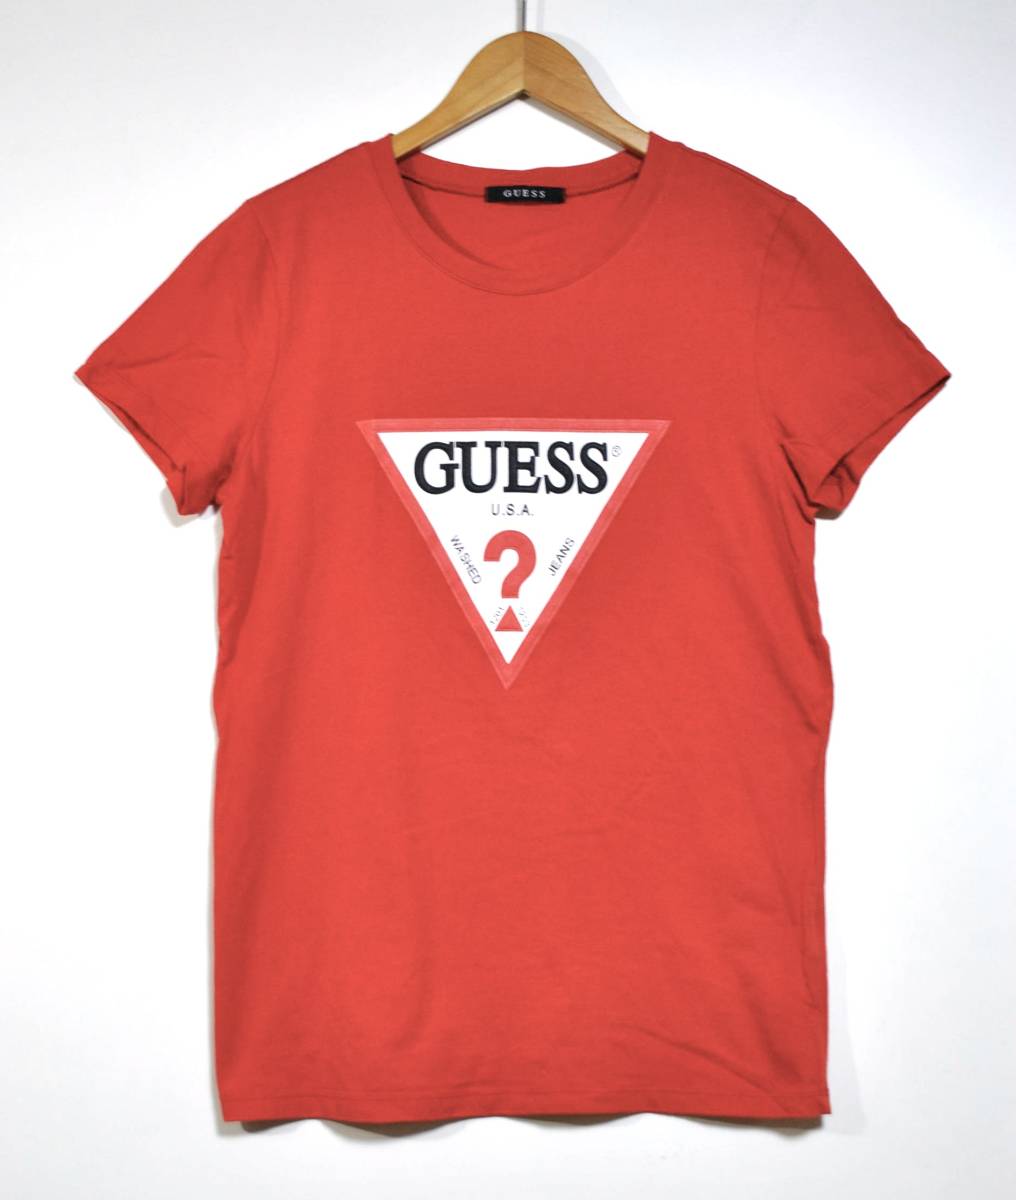  быстрое решение [GUESS] Guess короткий рукав Logo футболка красный дамский XL б/у одежда хорошая вещь 